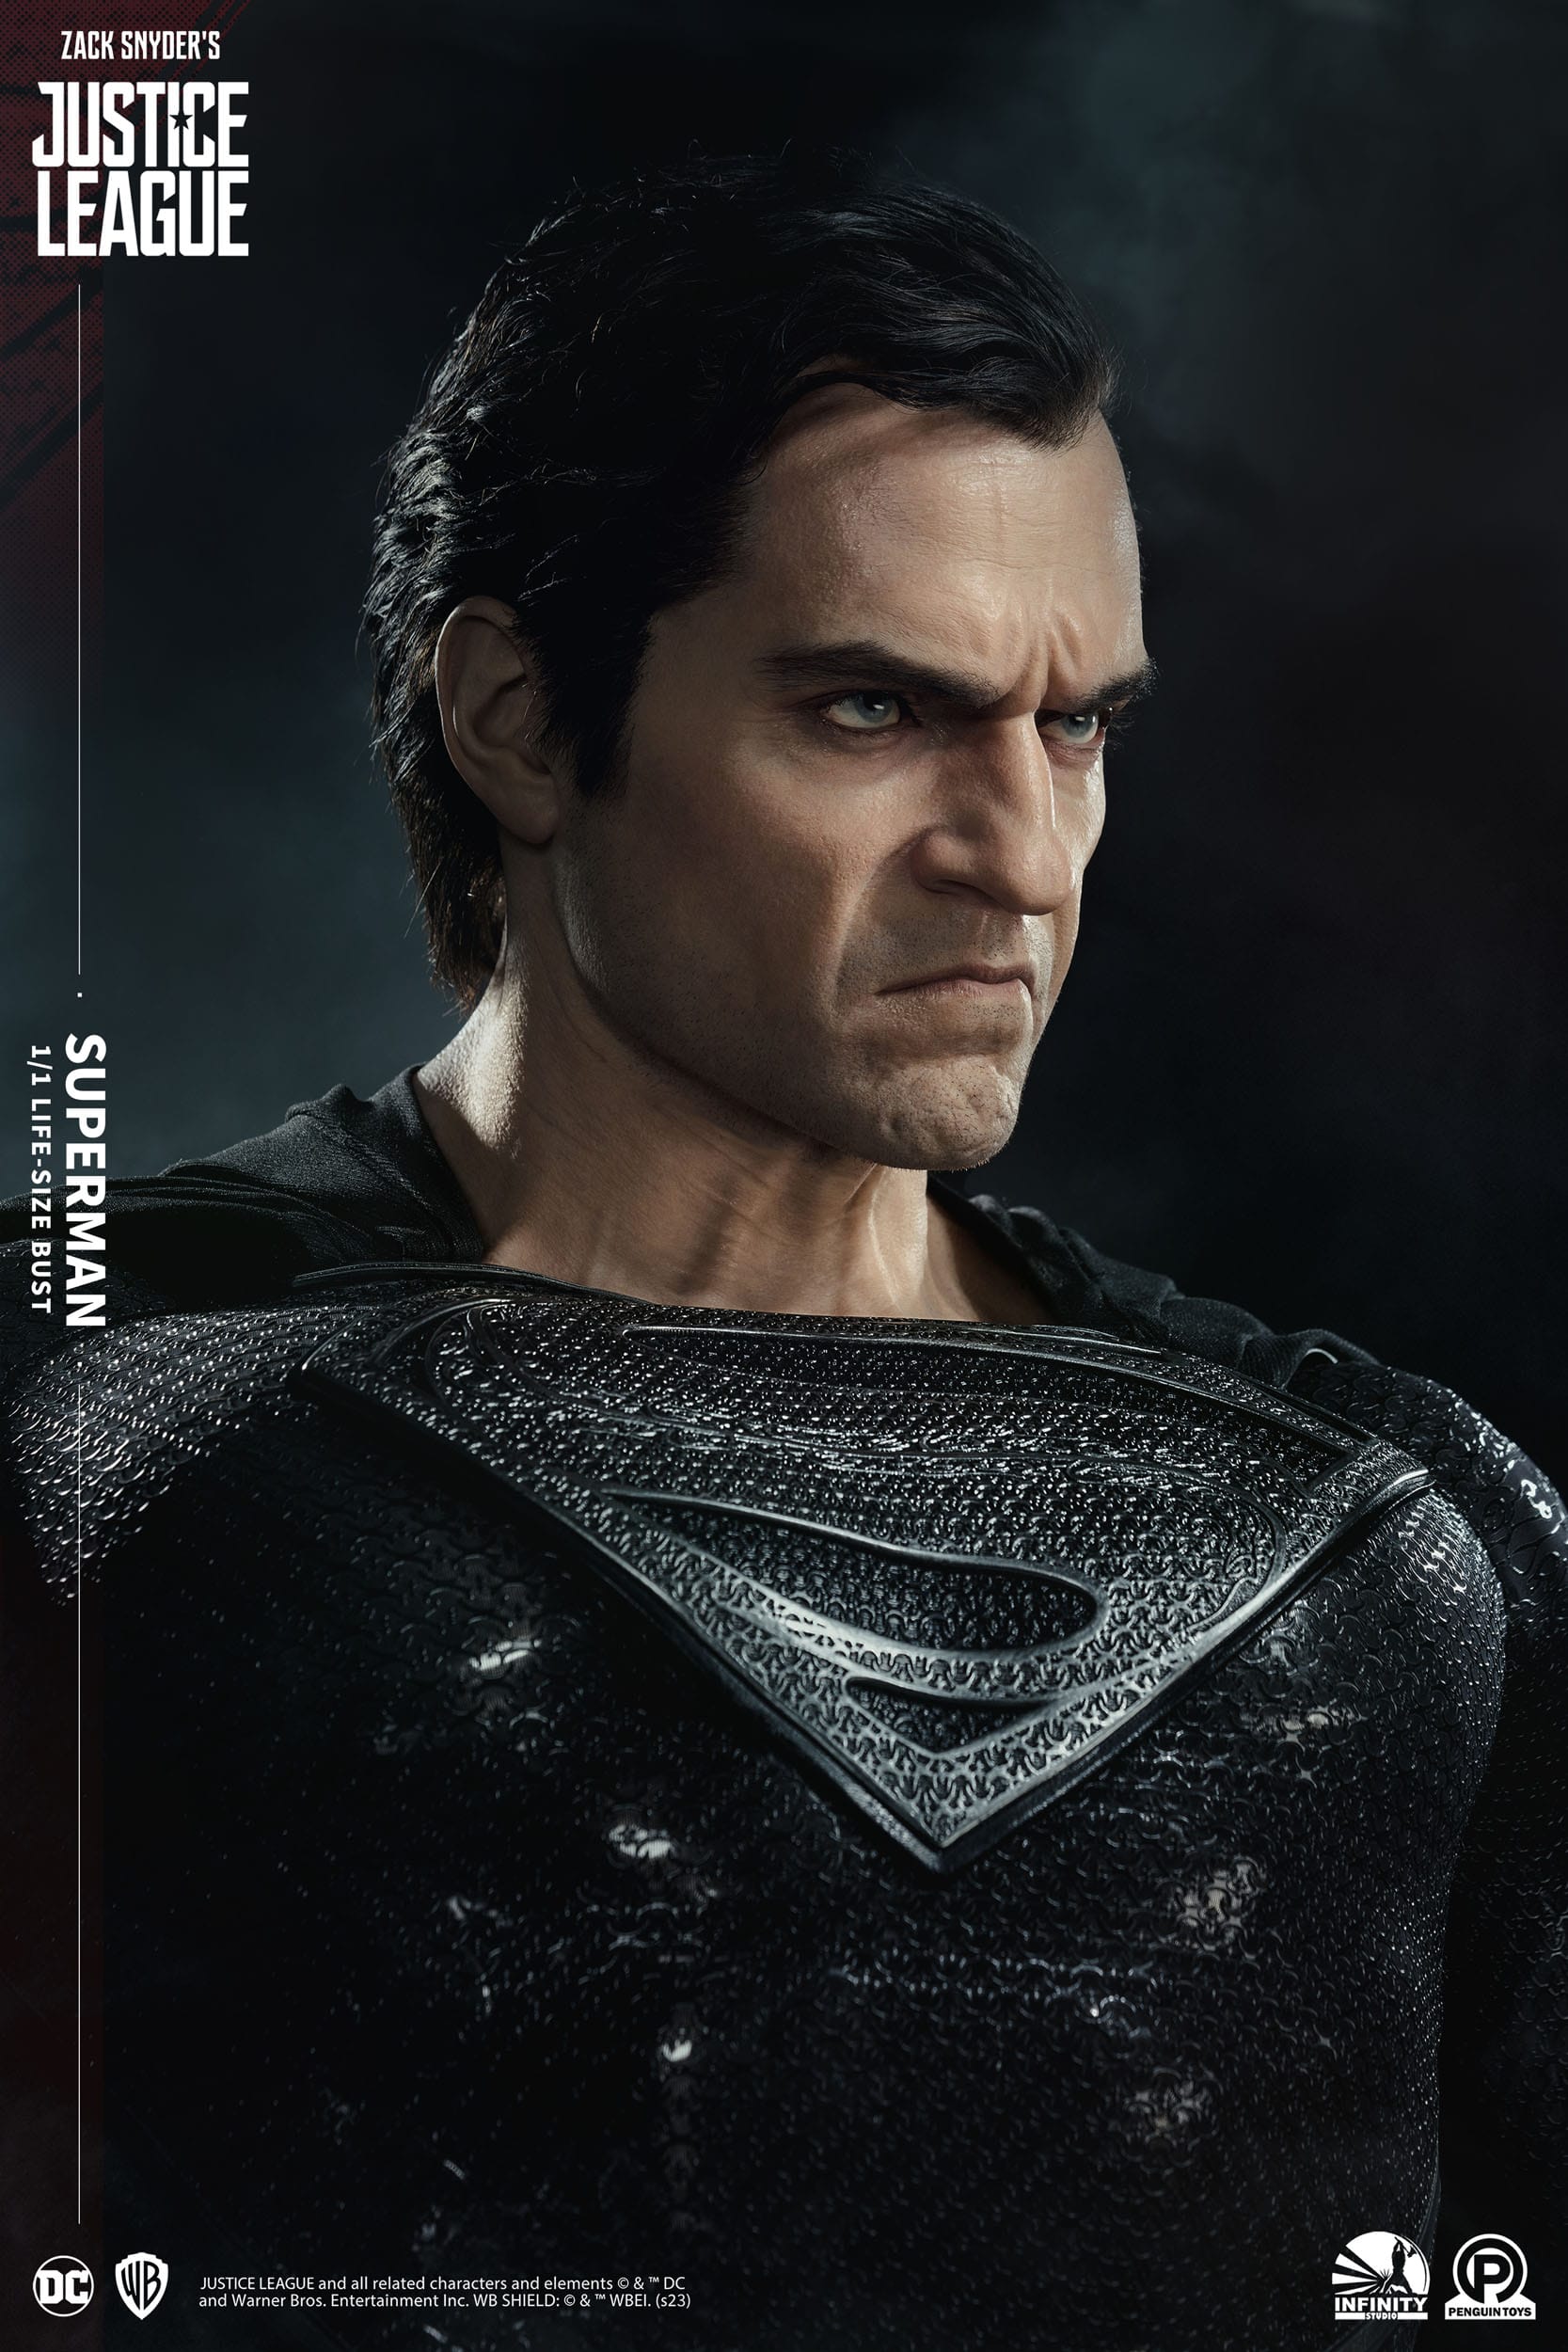 Busto Liga de la Justicia Superman